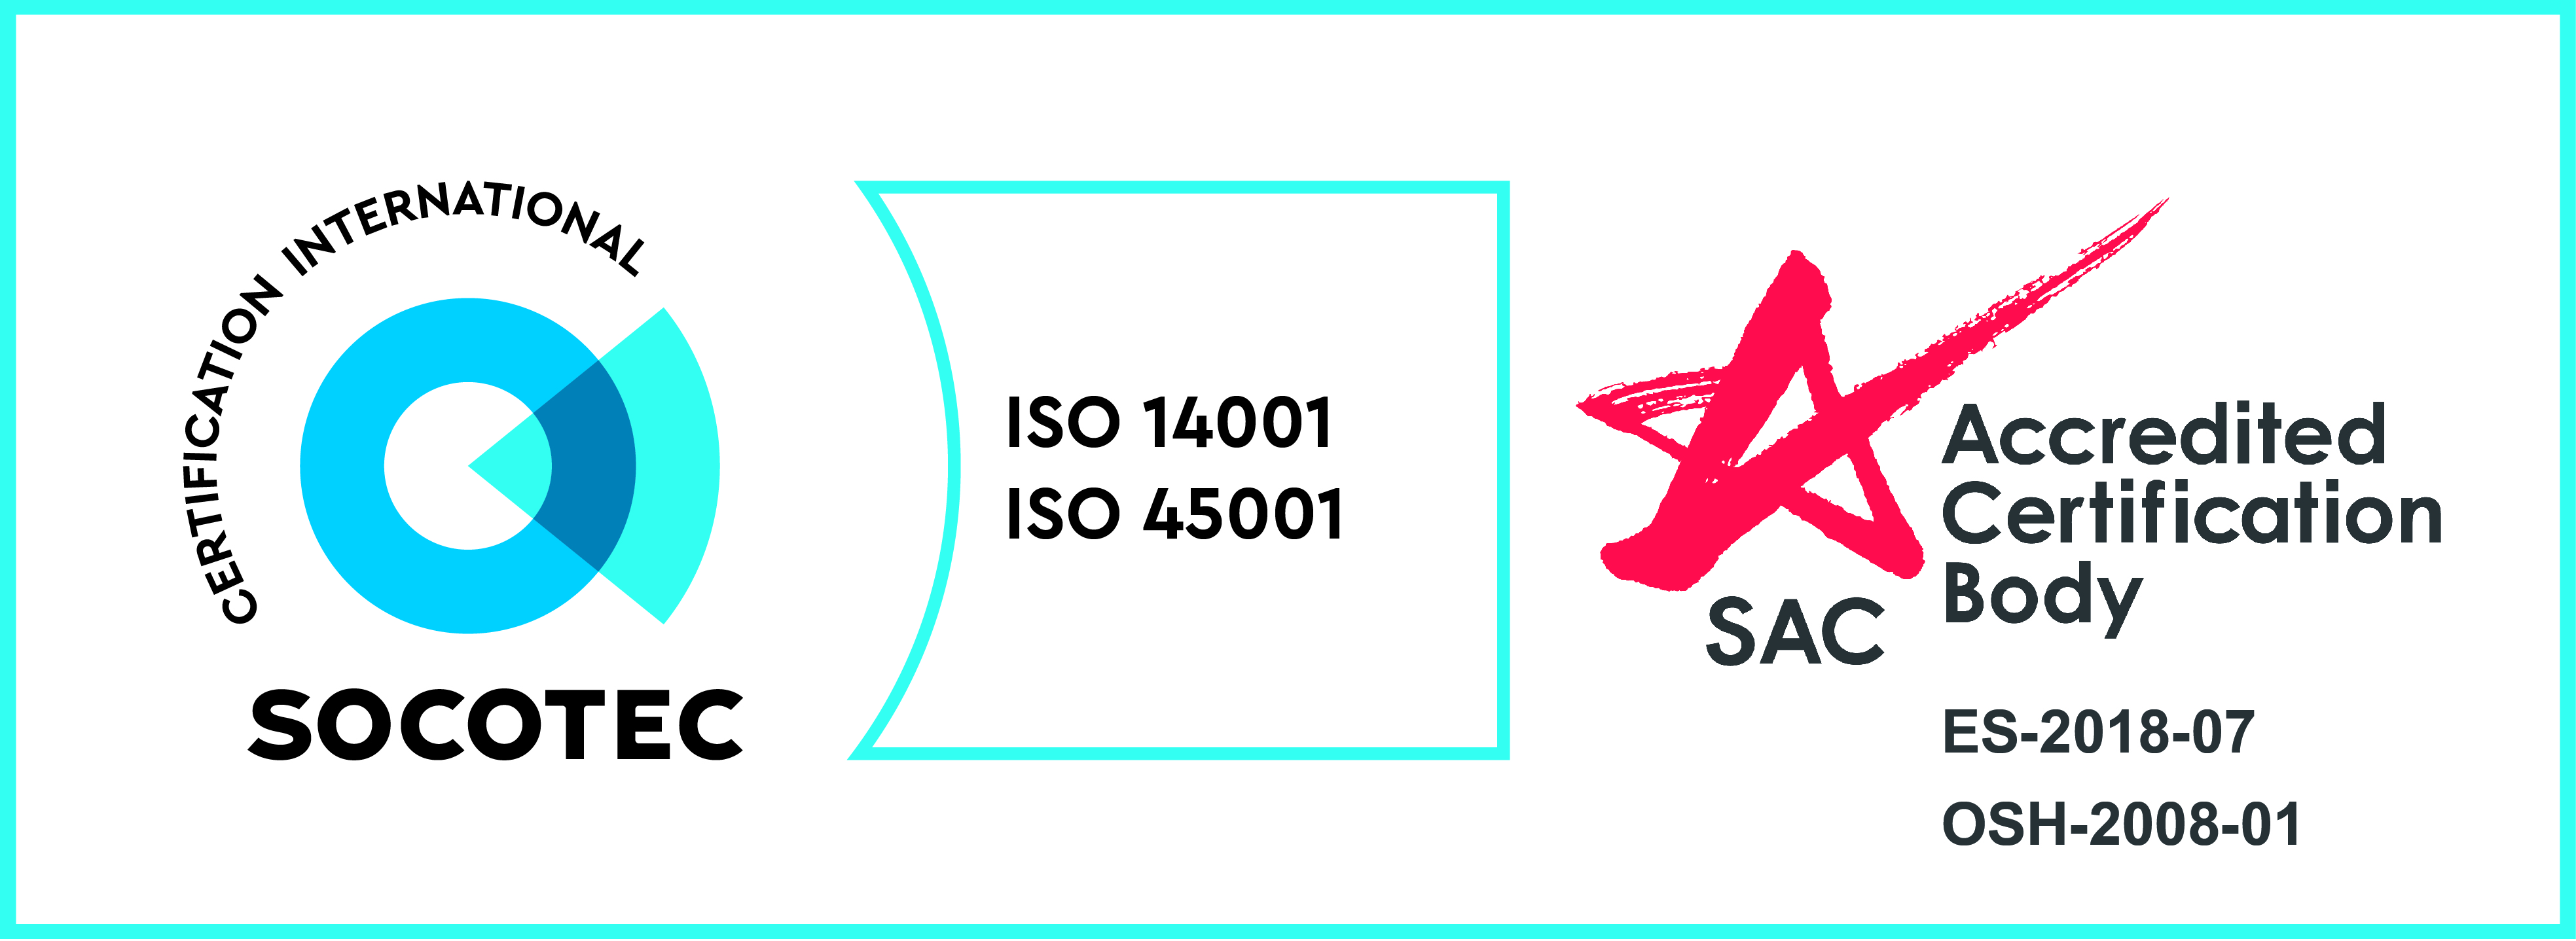 ISO14001 + ISO 45001 Accreditation